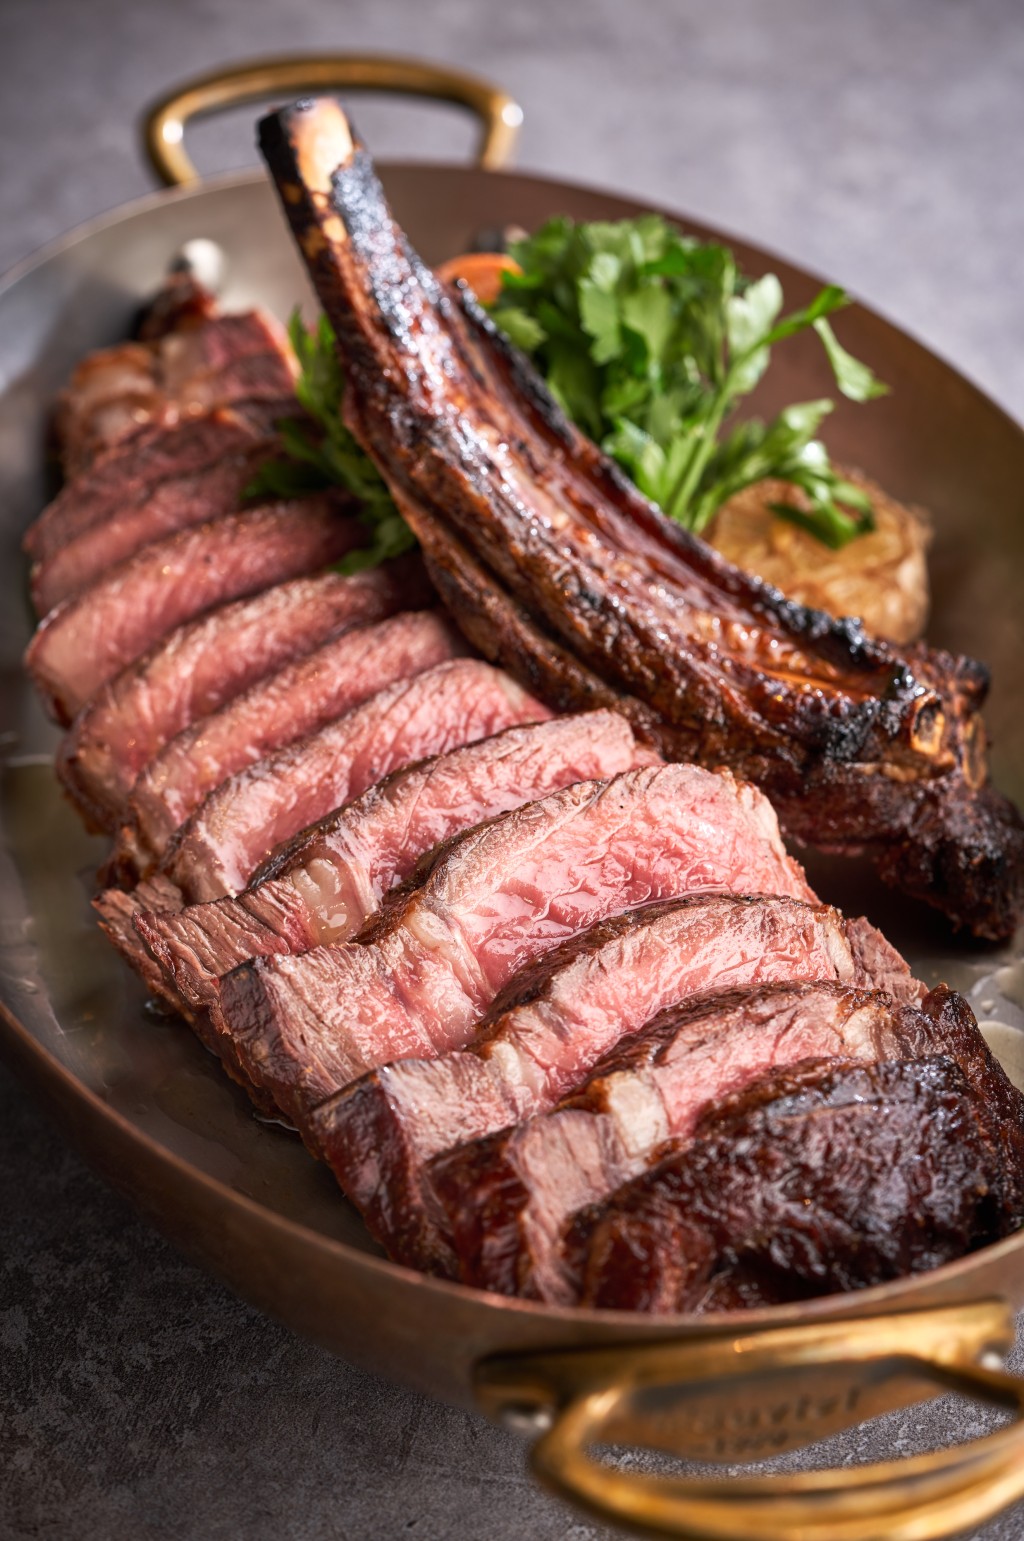 烤夏多布里昂牛排 $1,288，大廚因應牛排肉嫩多汁的特性，烤至半生熟，吃起來肉香多汁。